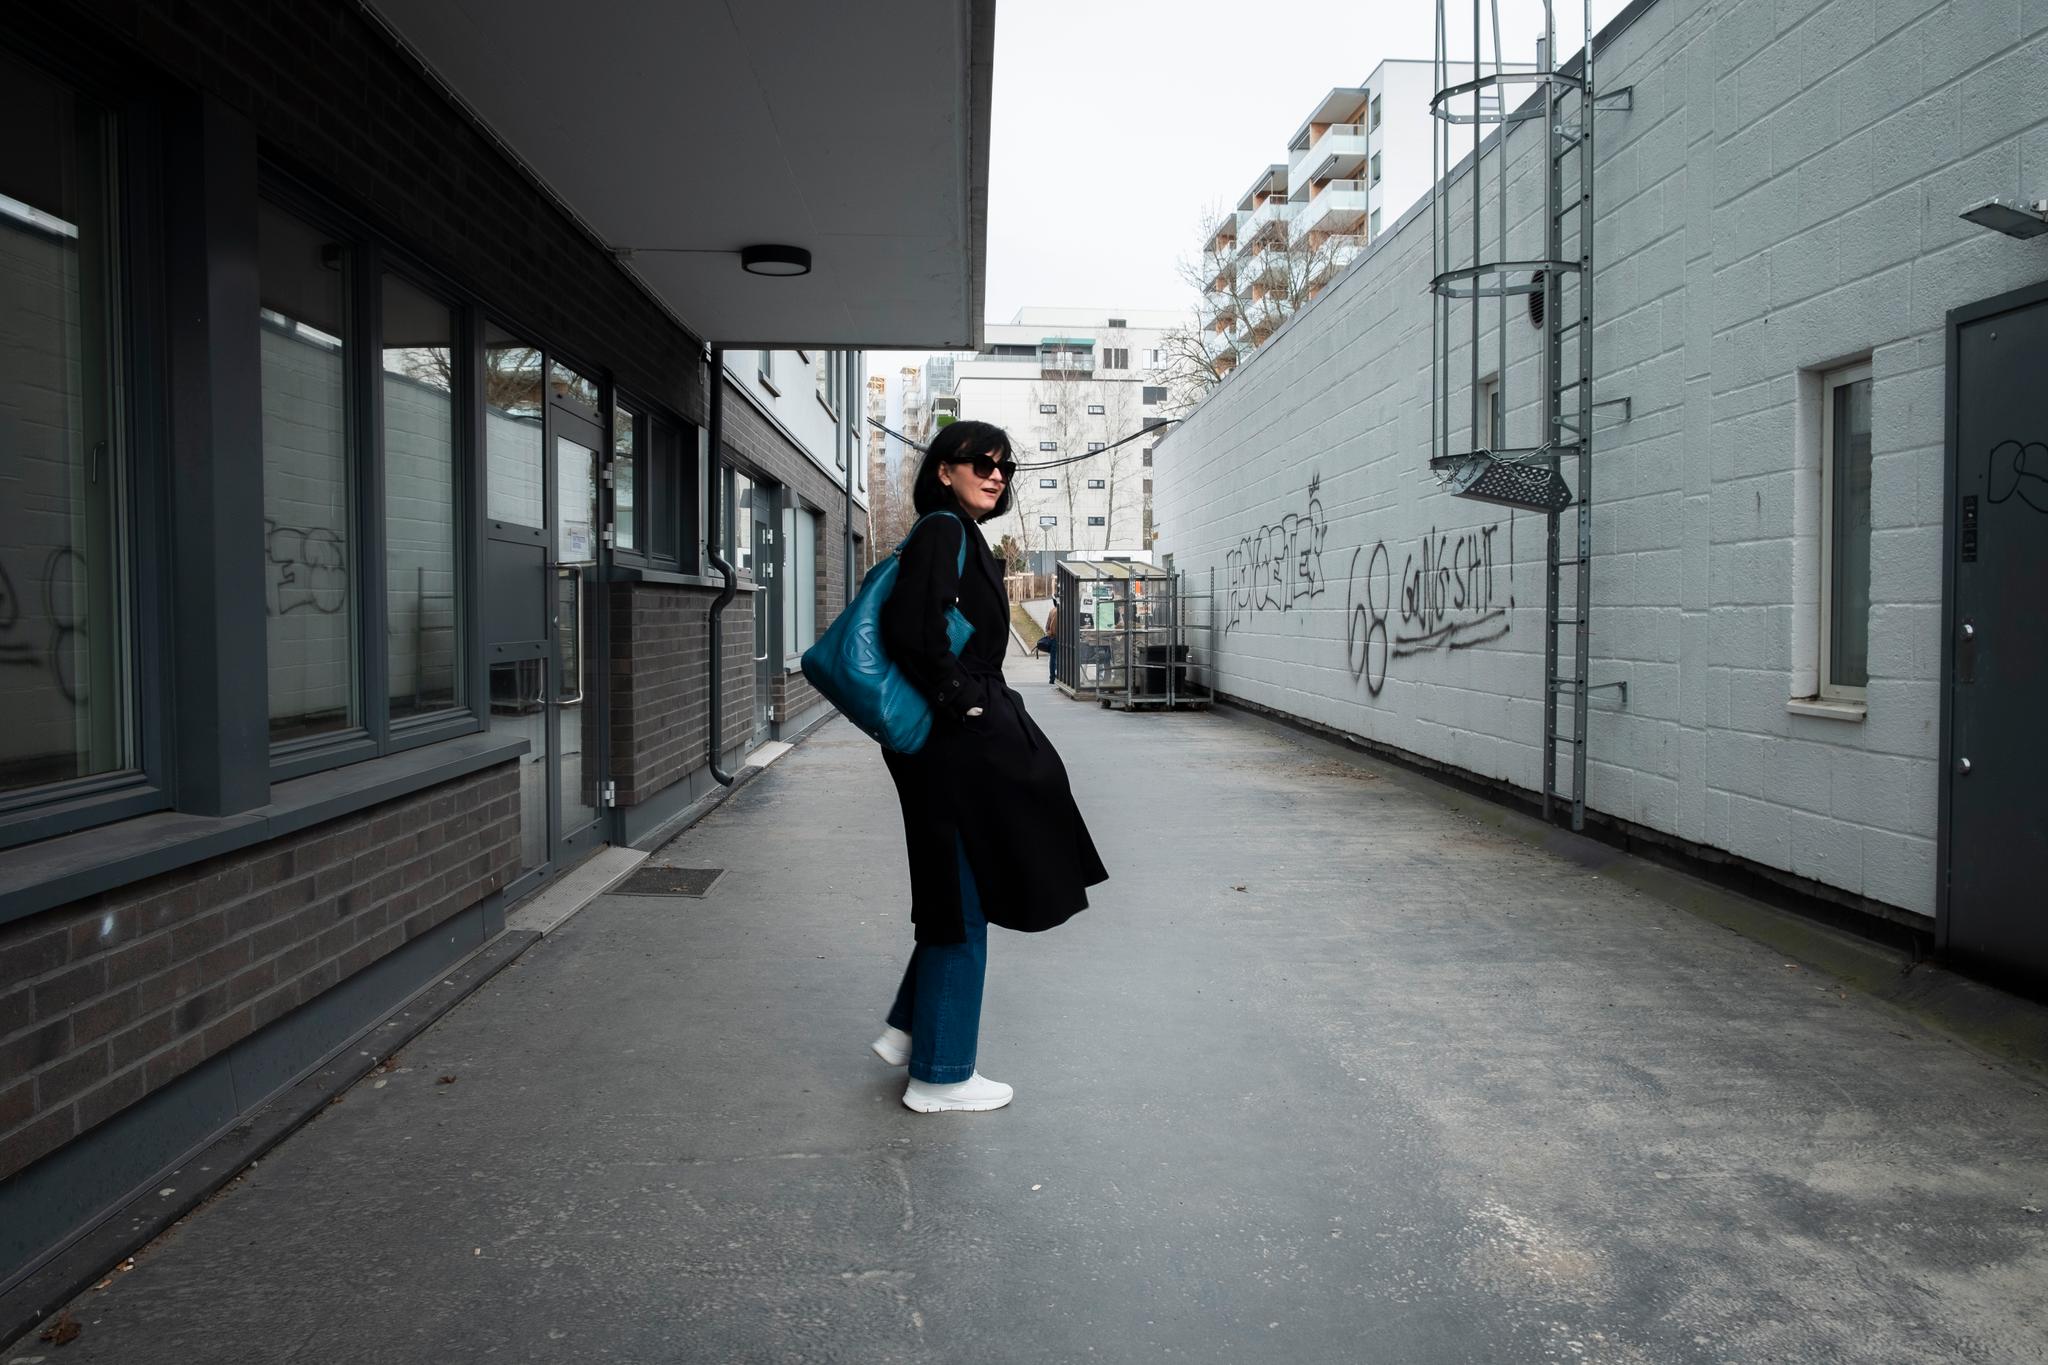 7 prosent av arbeidsløse i Norge er ukrainere. Tusener av ukrainske flyktninger går som Iryna Bielova ut av kurs de neste månedene og søker jobb. 